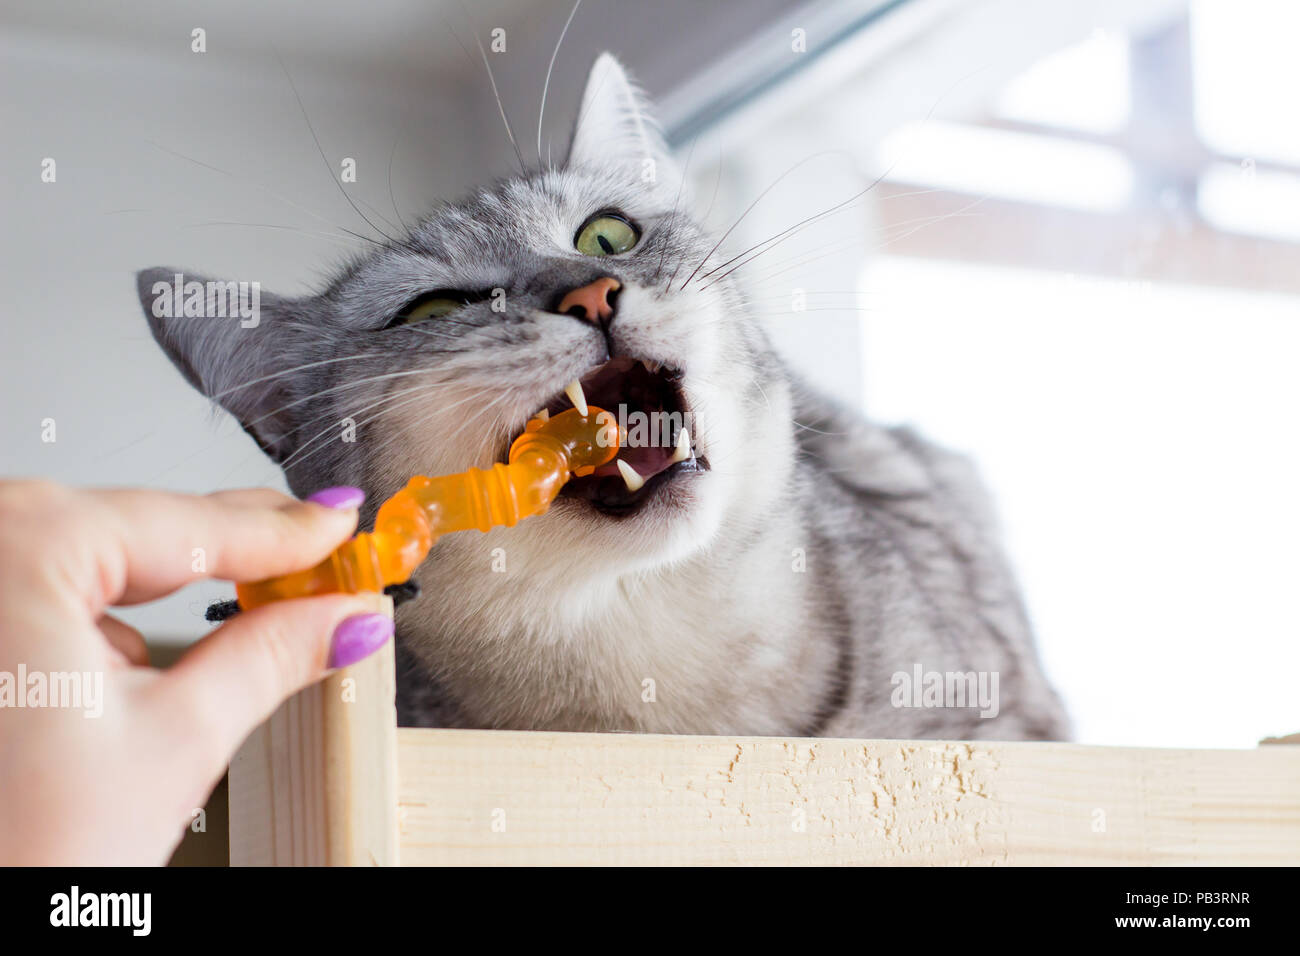 Arrabbiato Scottish cat bite orange giocattolo e giocare con la mano umana. Foto Stock